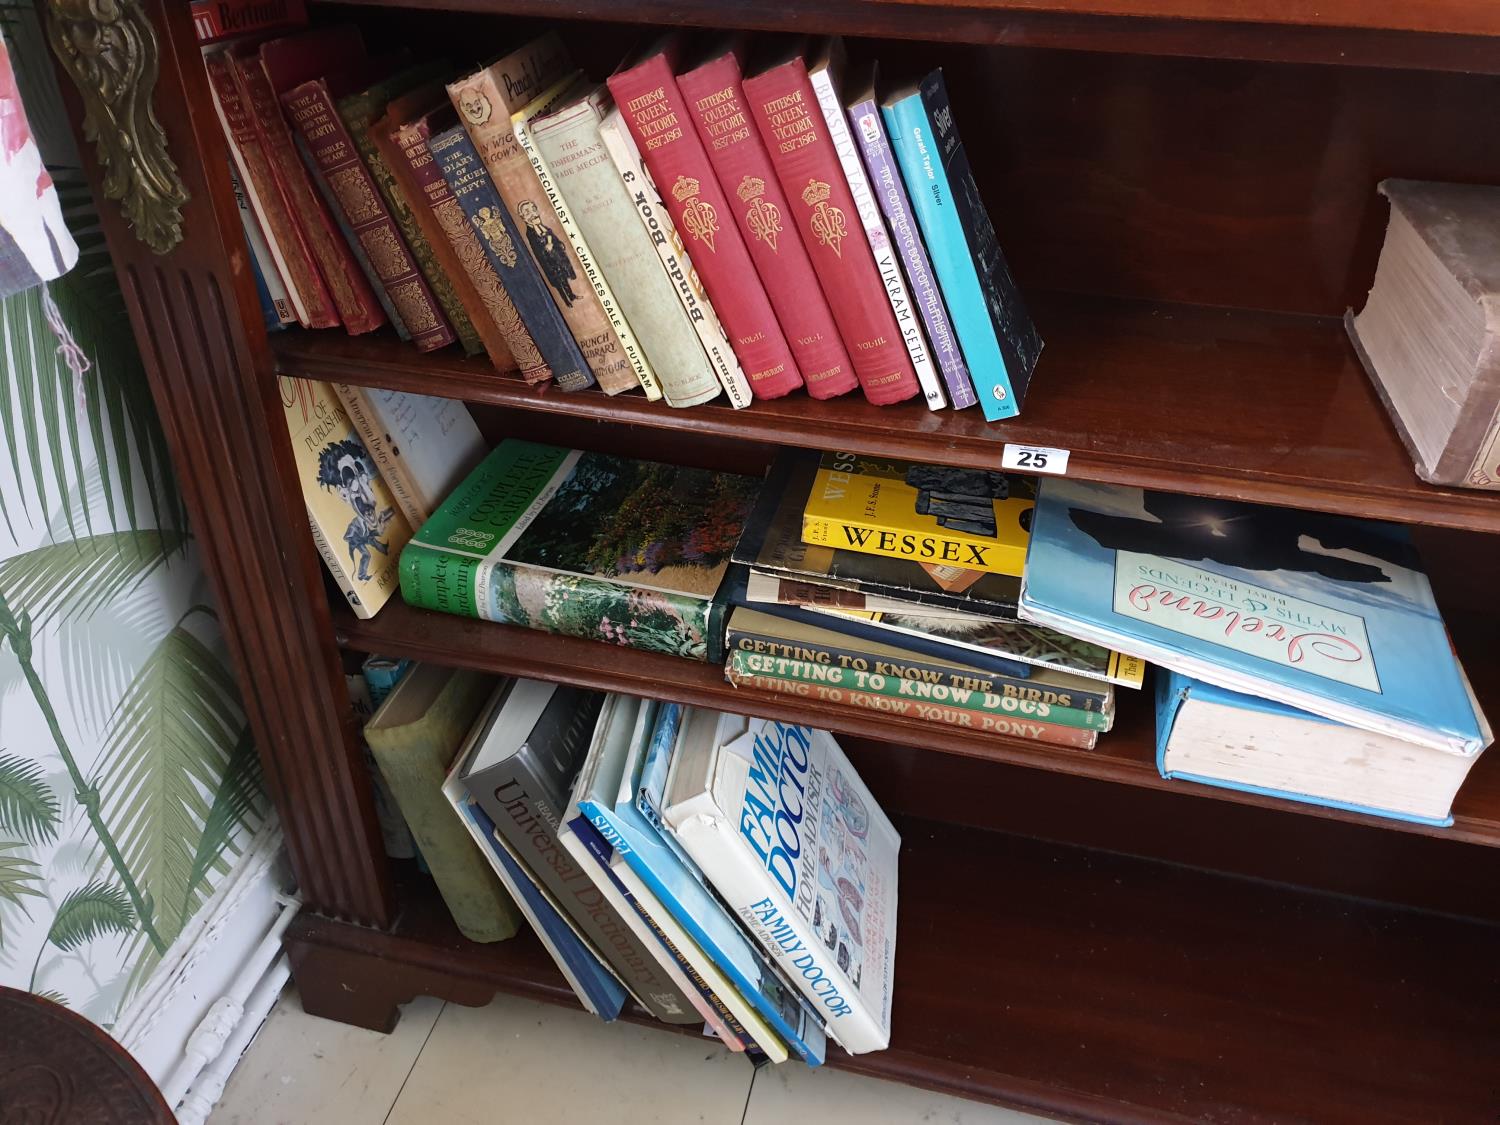 A quantity of Books in bookcase.